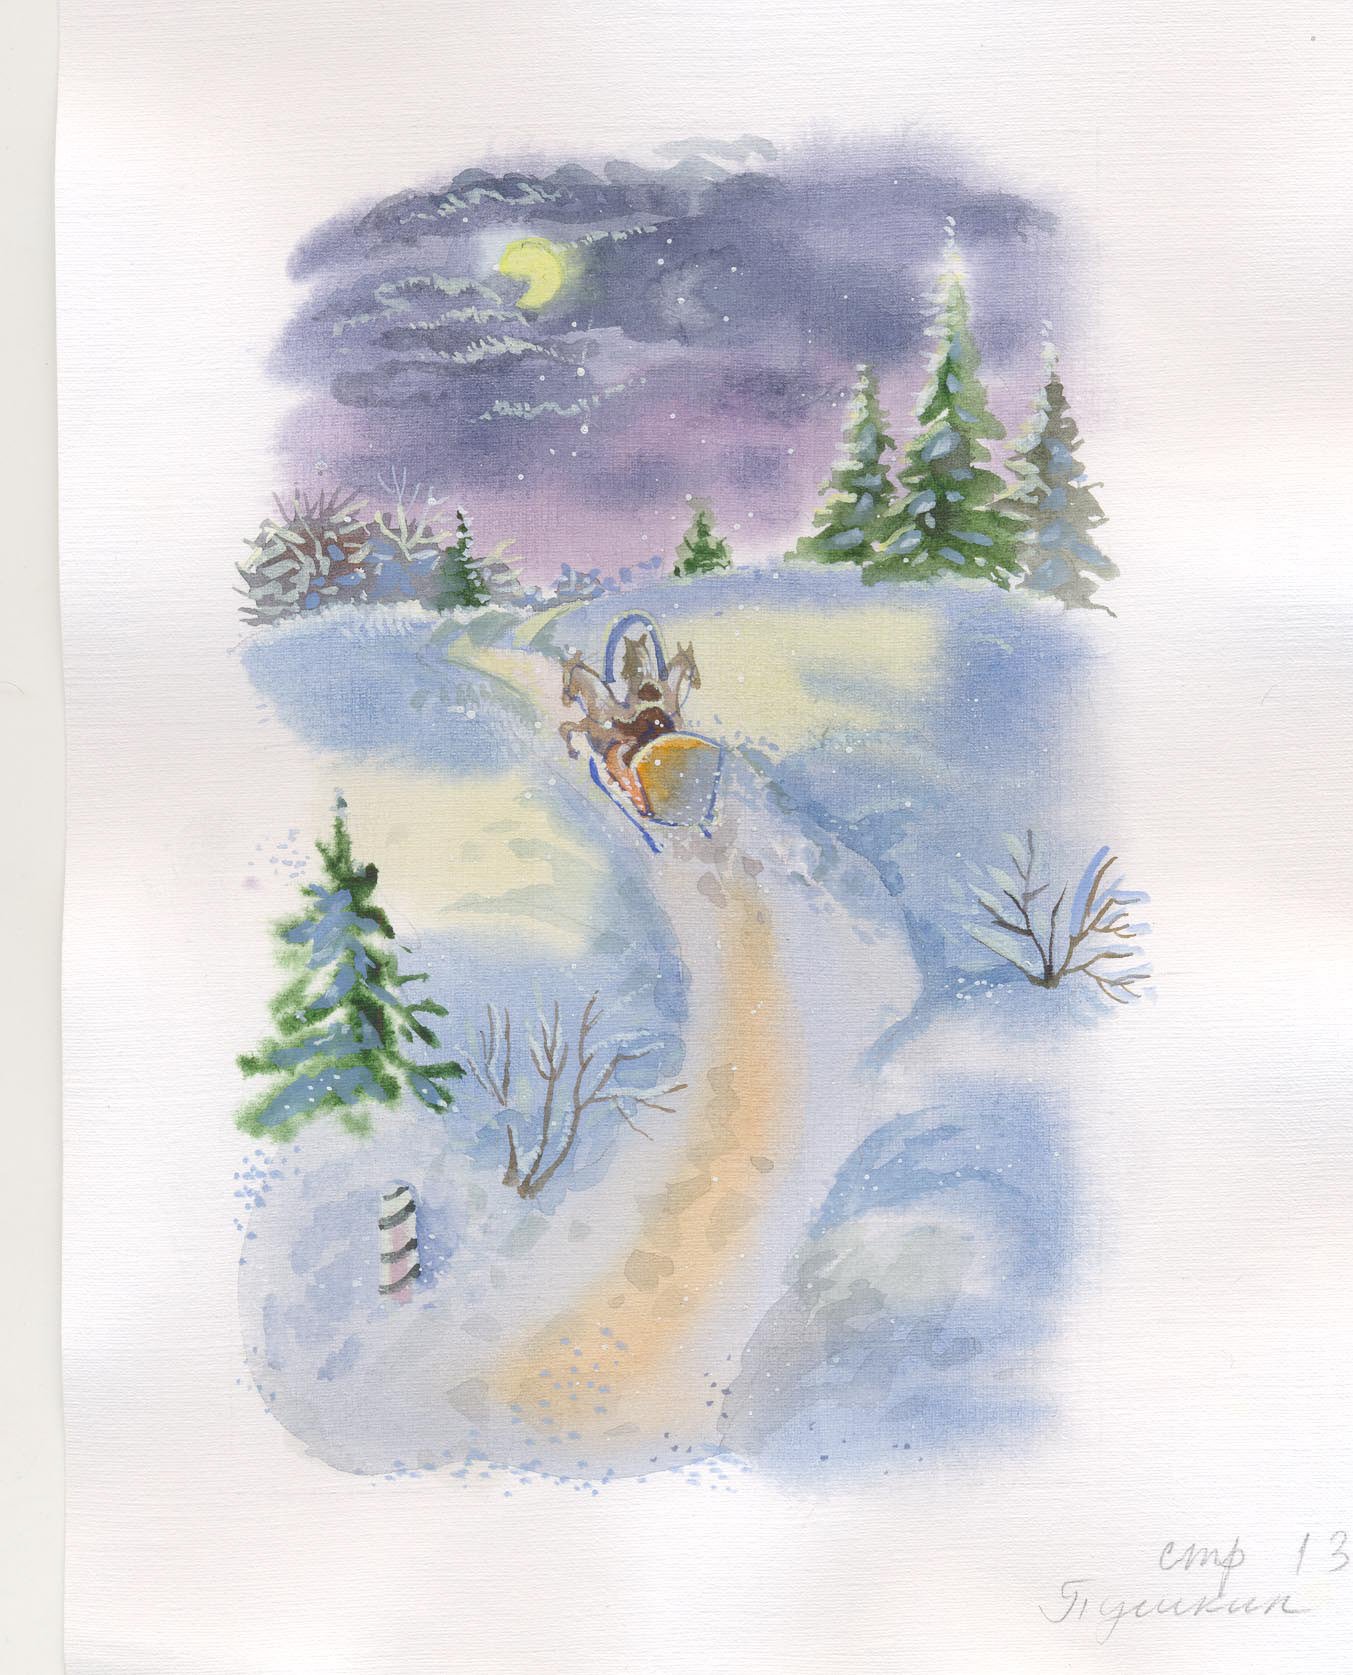 Рисунок к стихотворению зимнее. Пороша Есенин иллюстрации. Иллюстрация к стихотворению Есенина пороша.